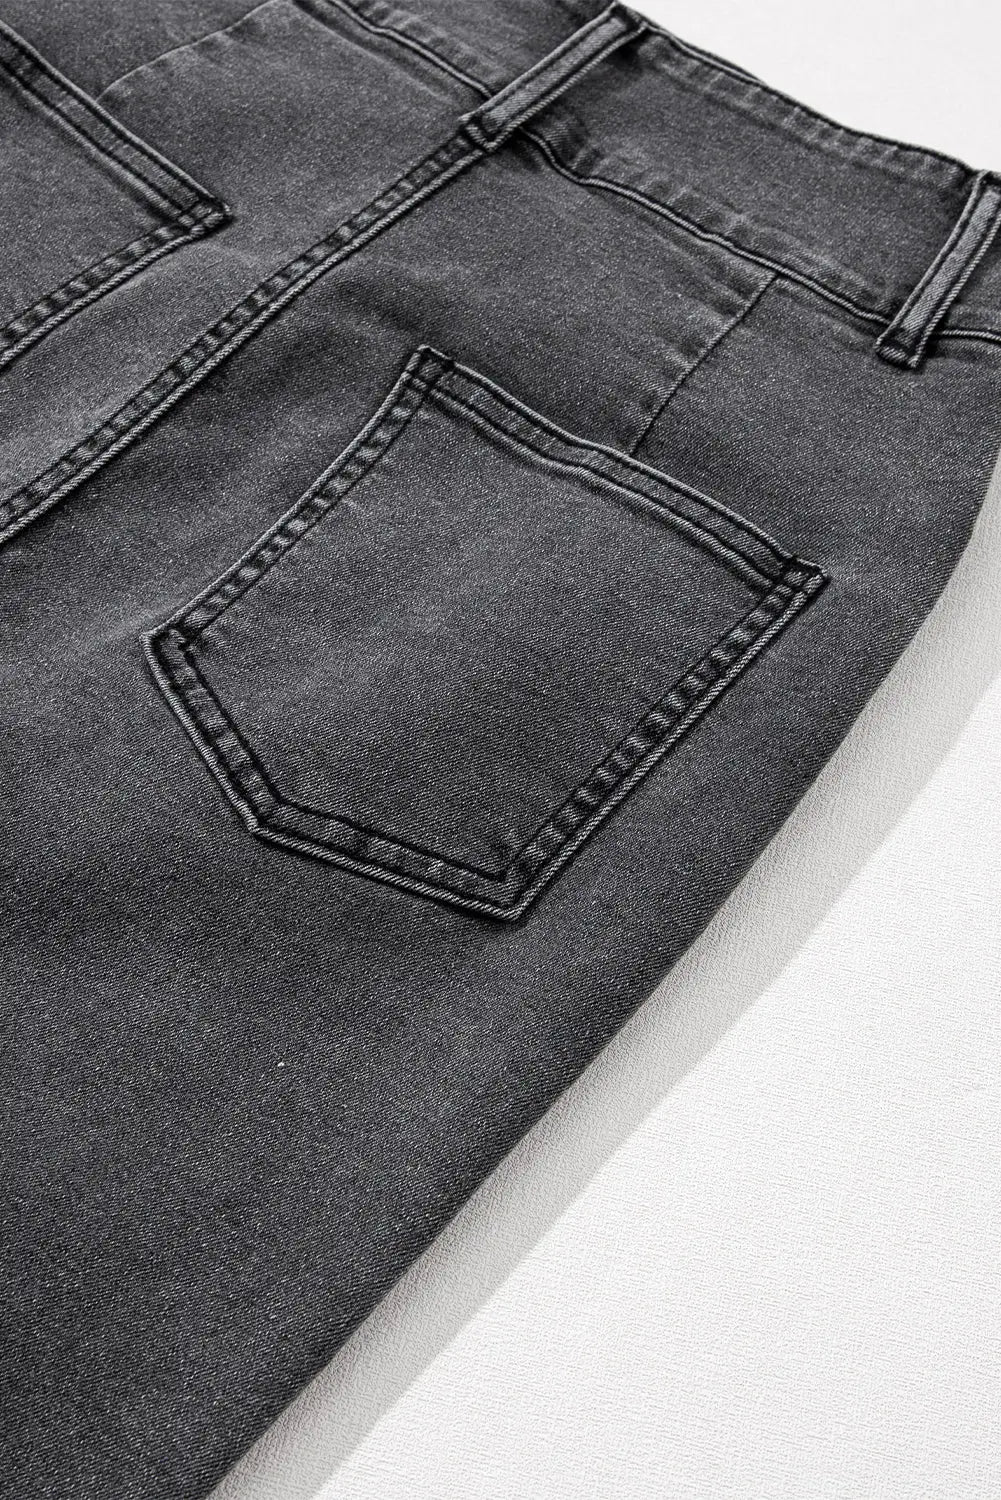 Black raw edge side slits buttoned midi denim skirt - bottoms